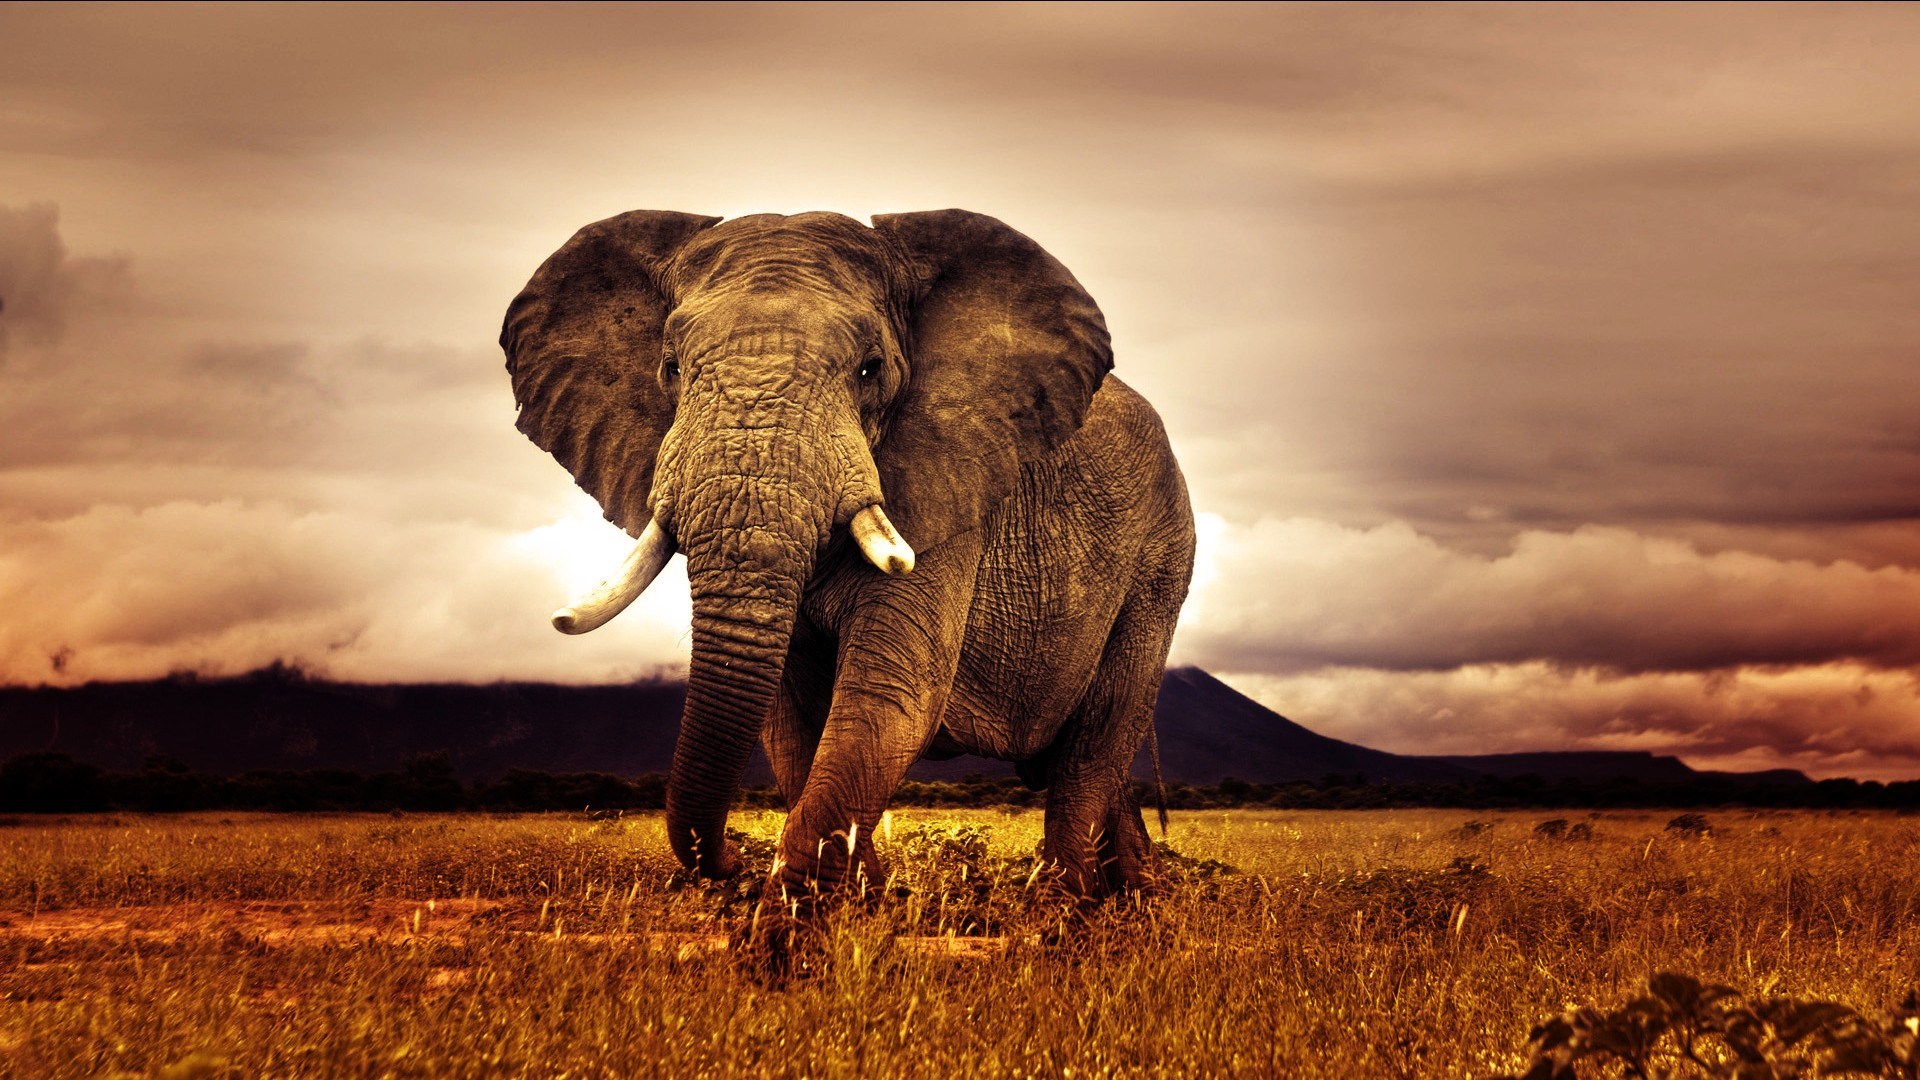 319422 免費下載壁紙 动物, 非洲草原象, 大象 屏保和圖片